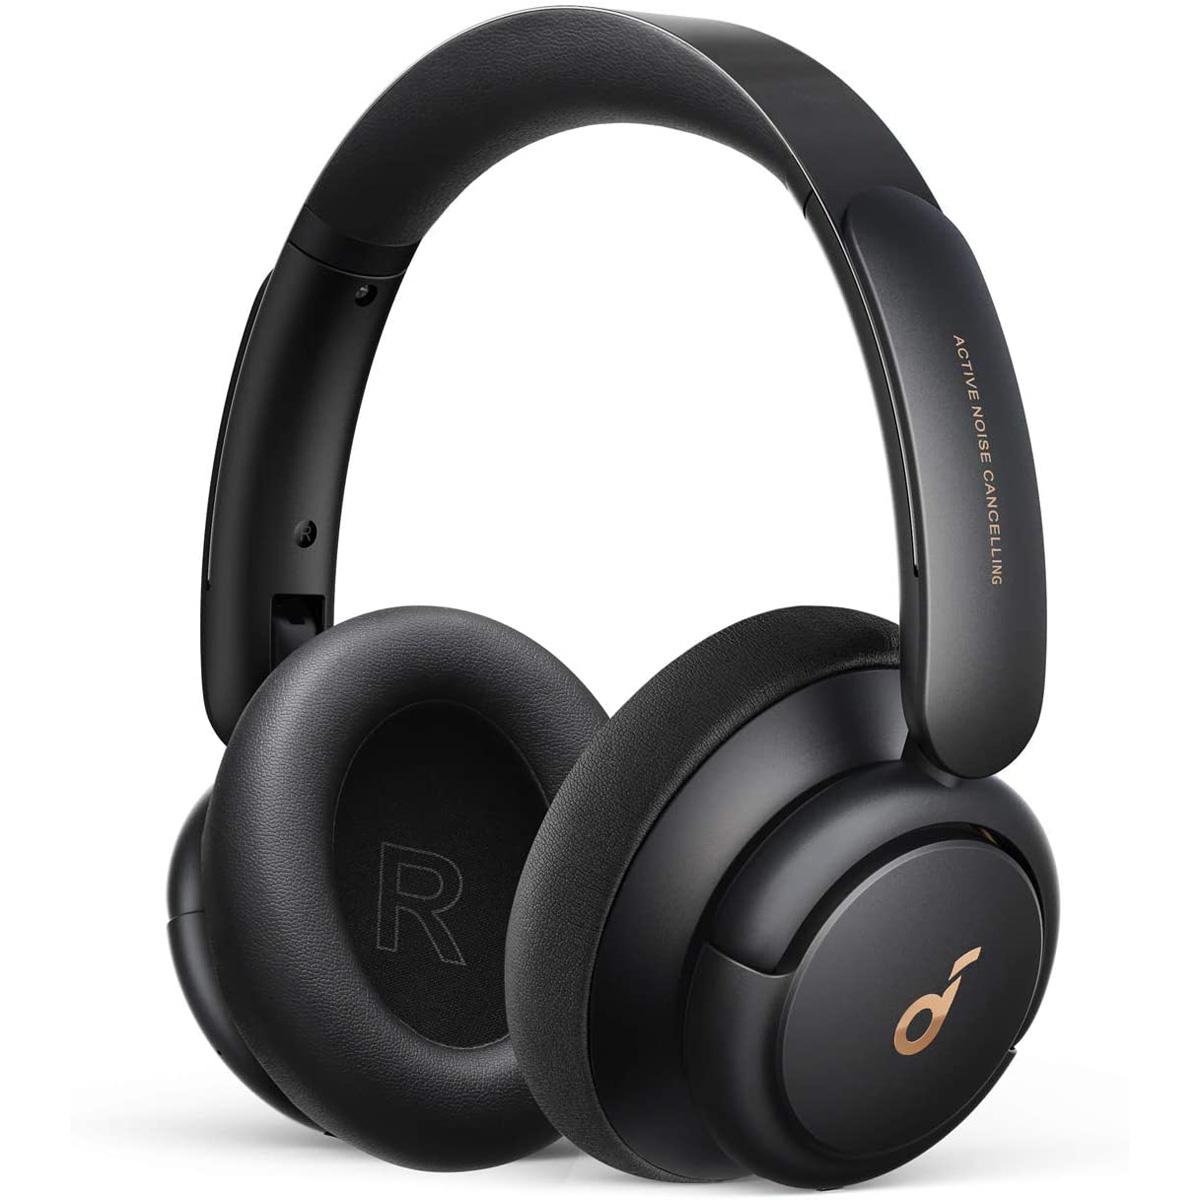 Anker Soundcore Life Q30 Hybrid Over-Ear Headphones for $64.99 Shipped